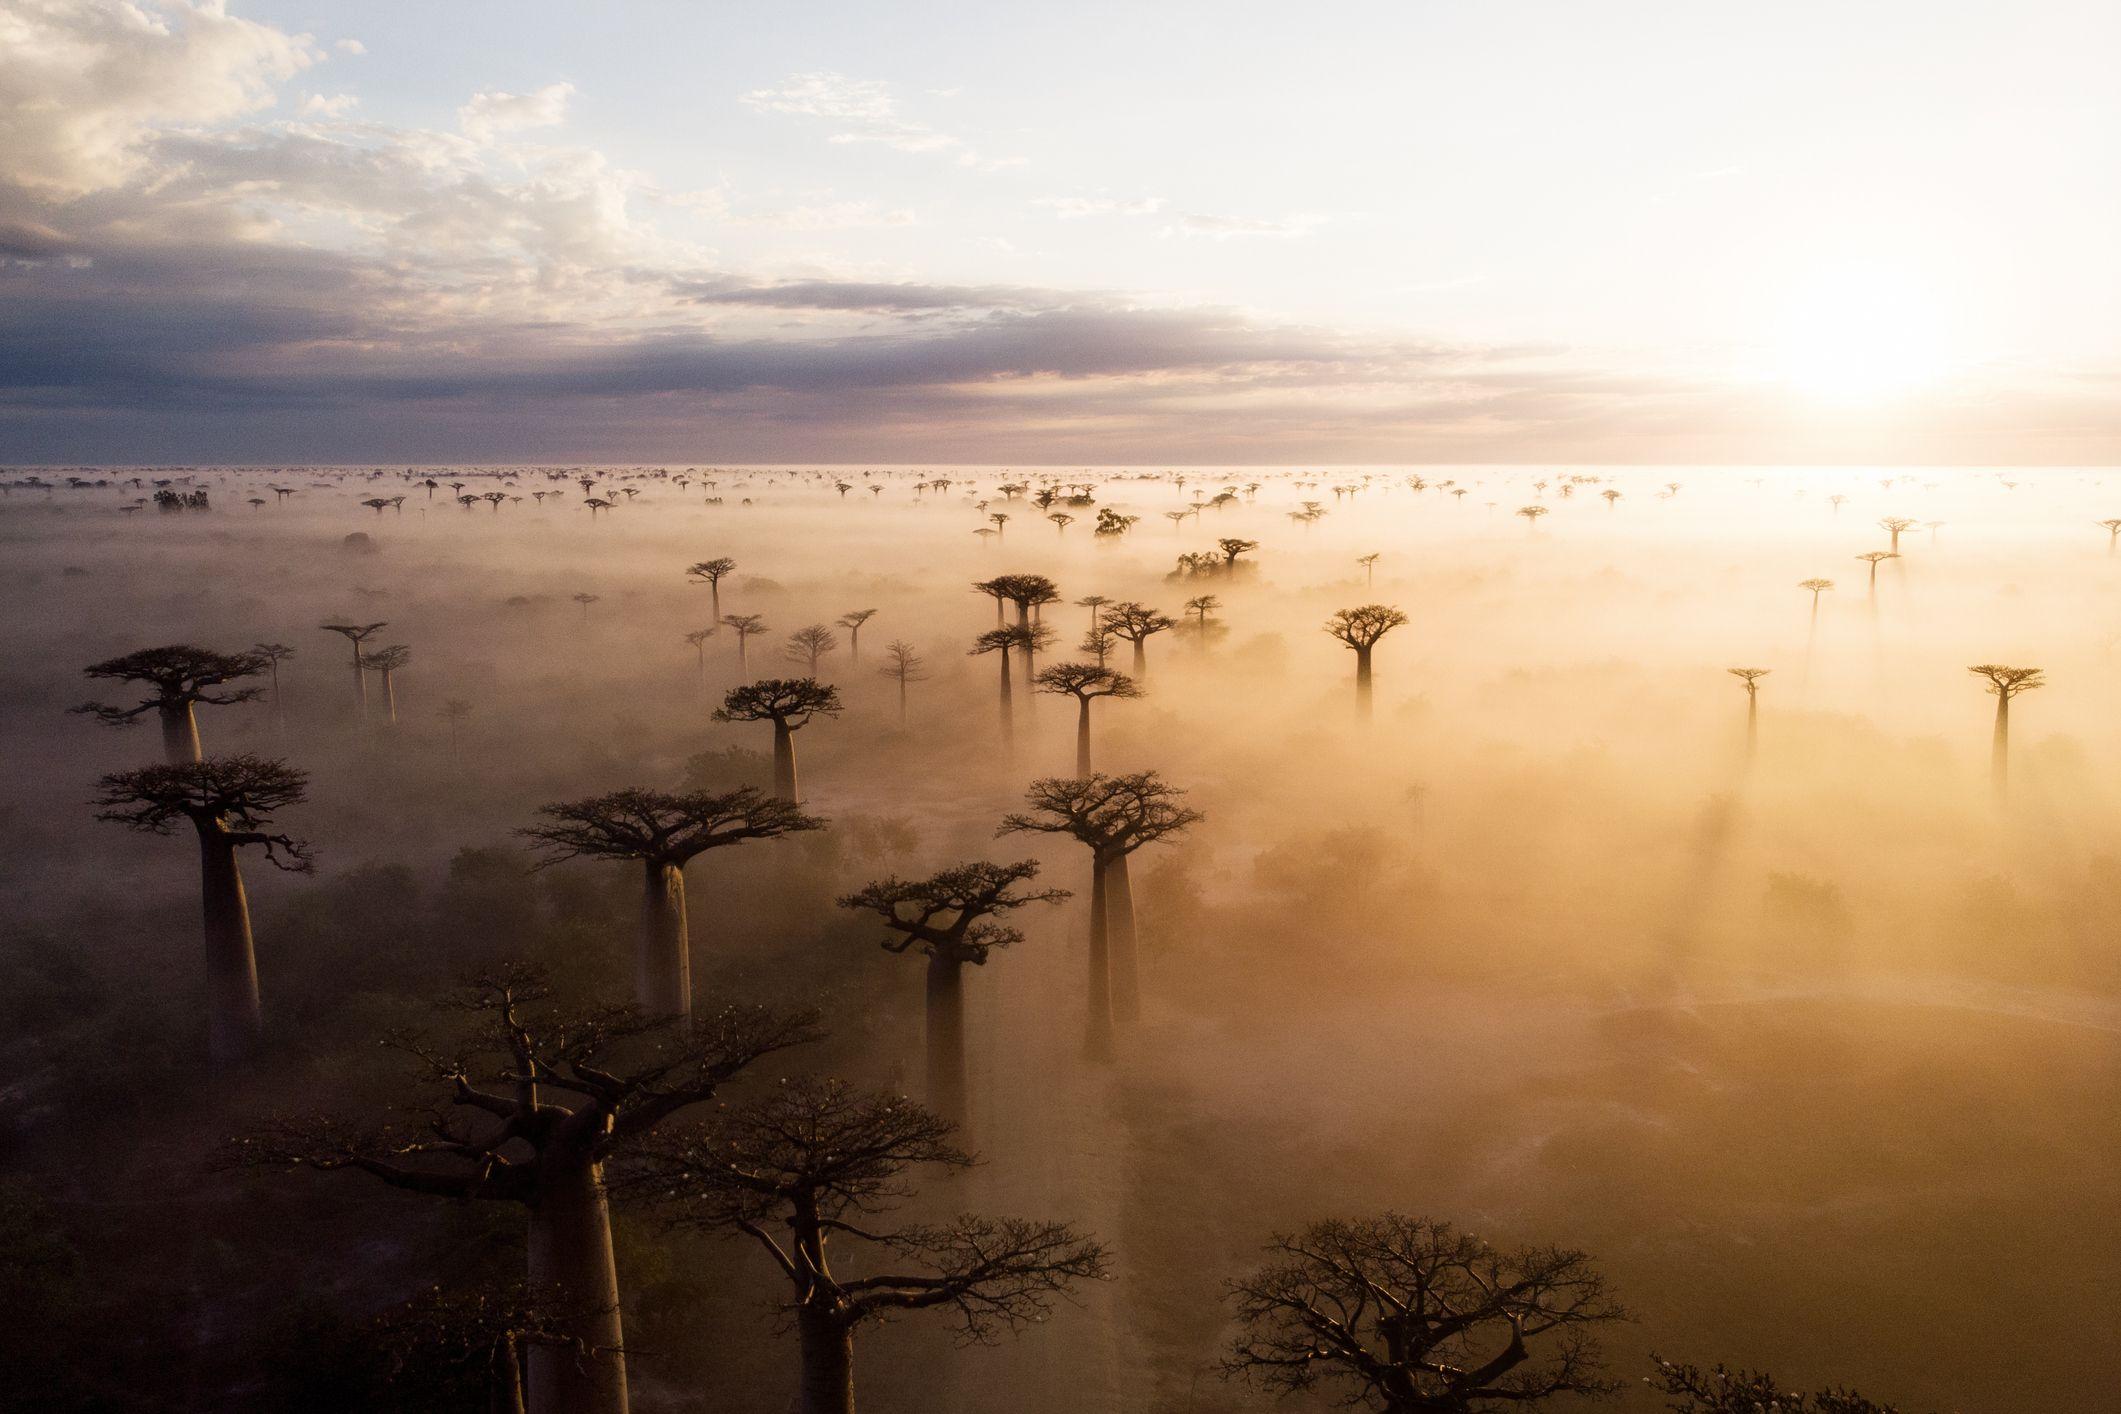 Un grupo de árboles baobab en la neblina.